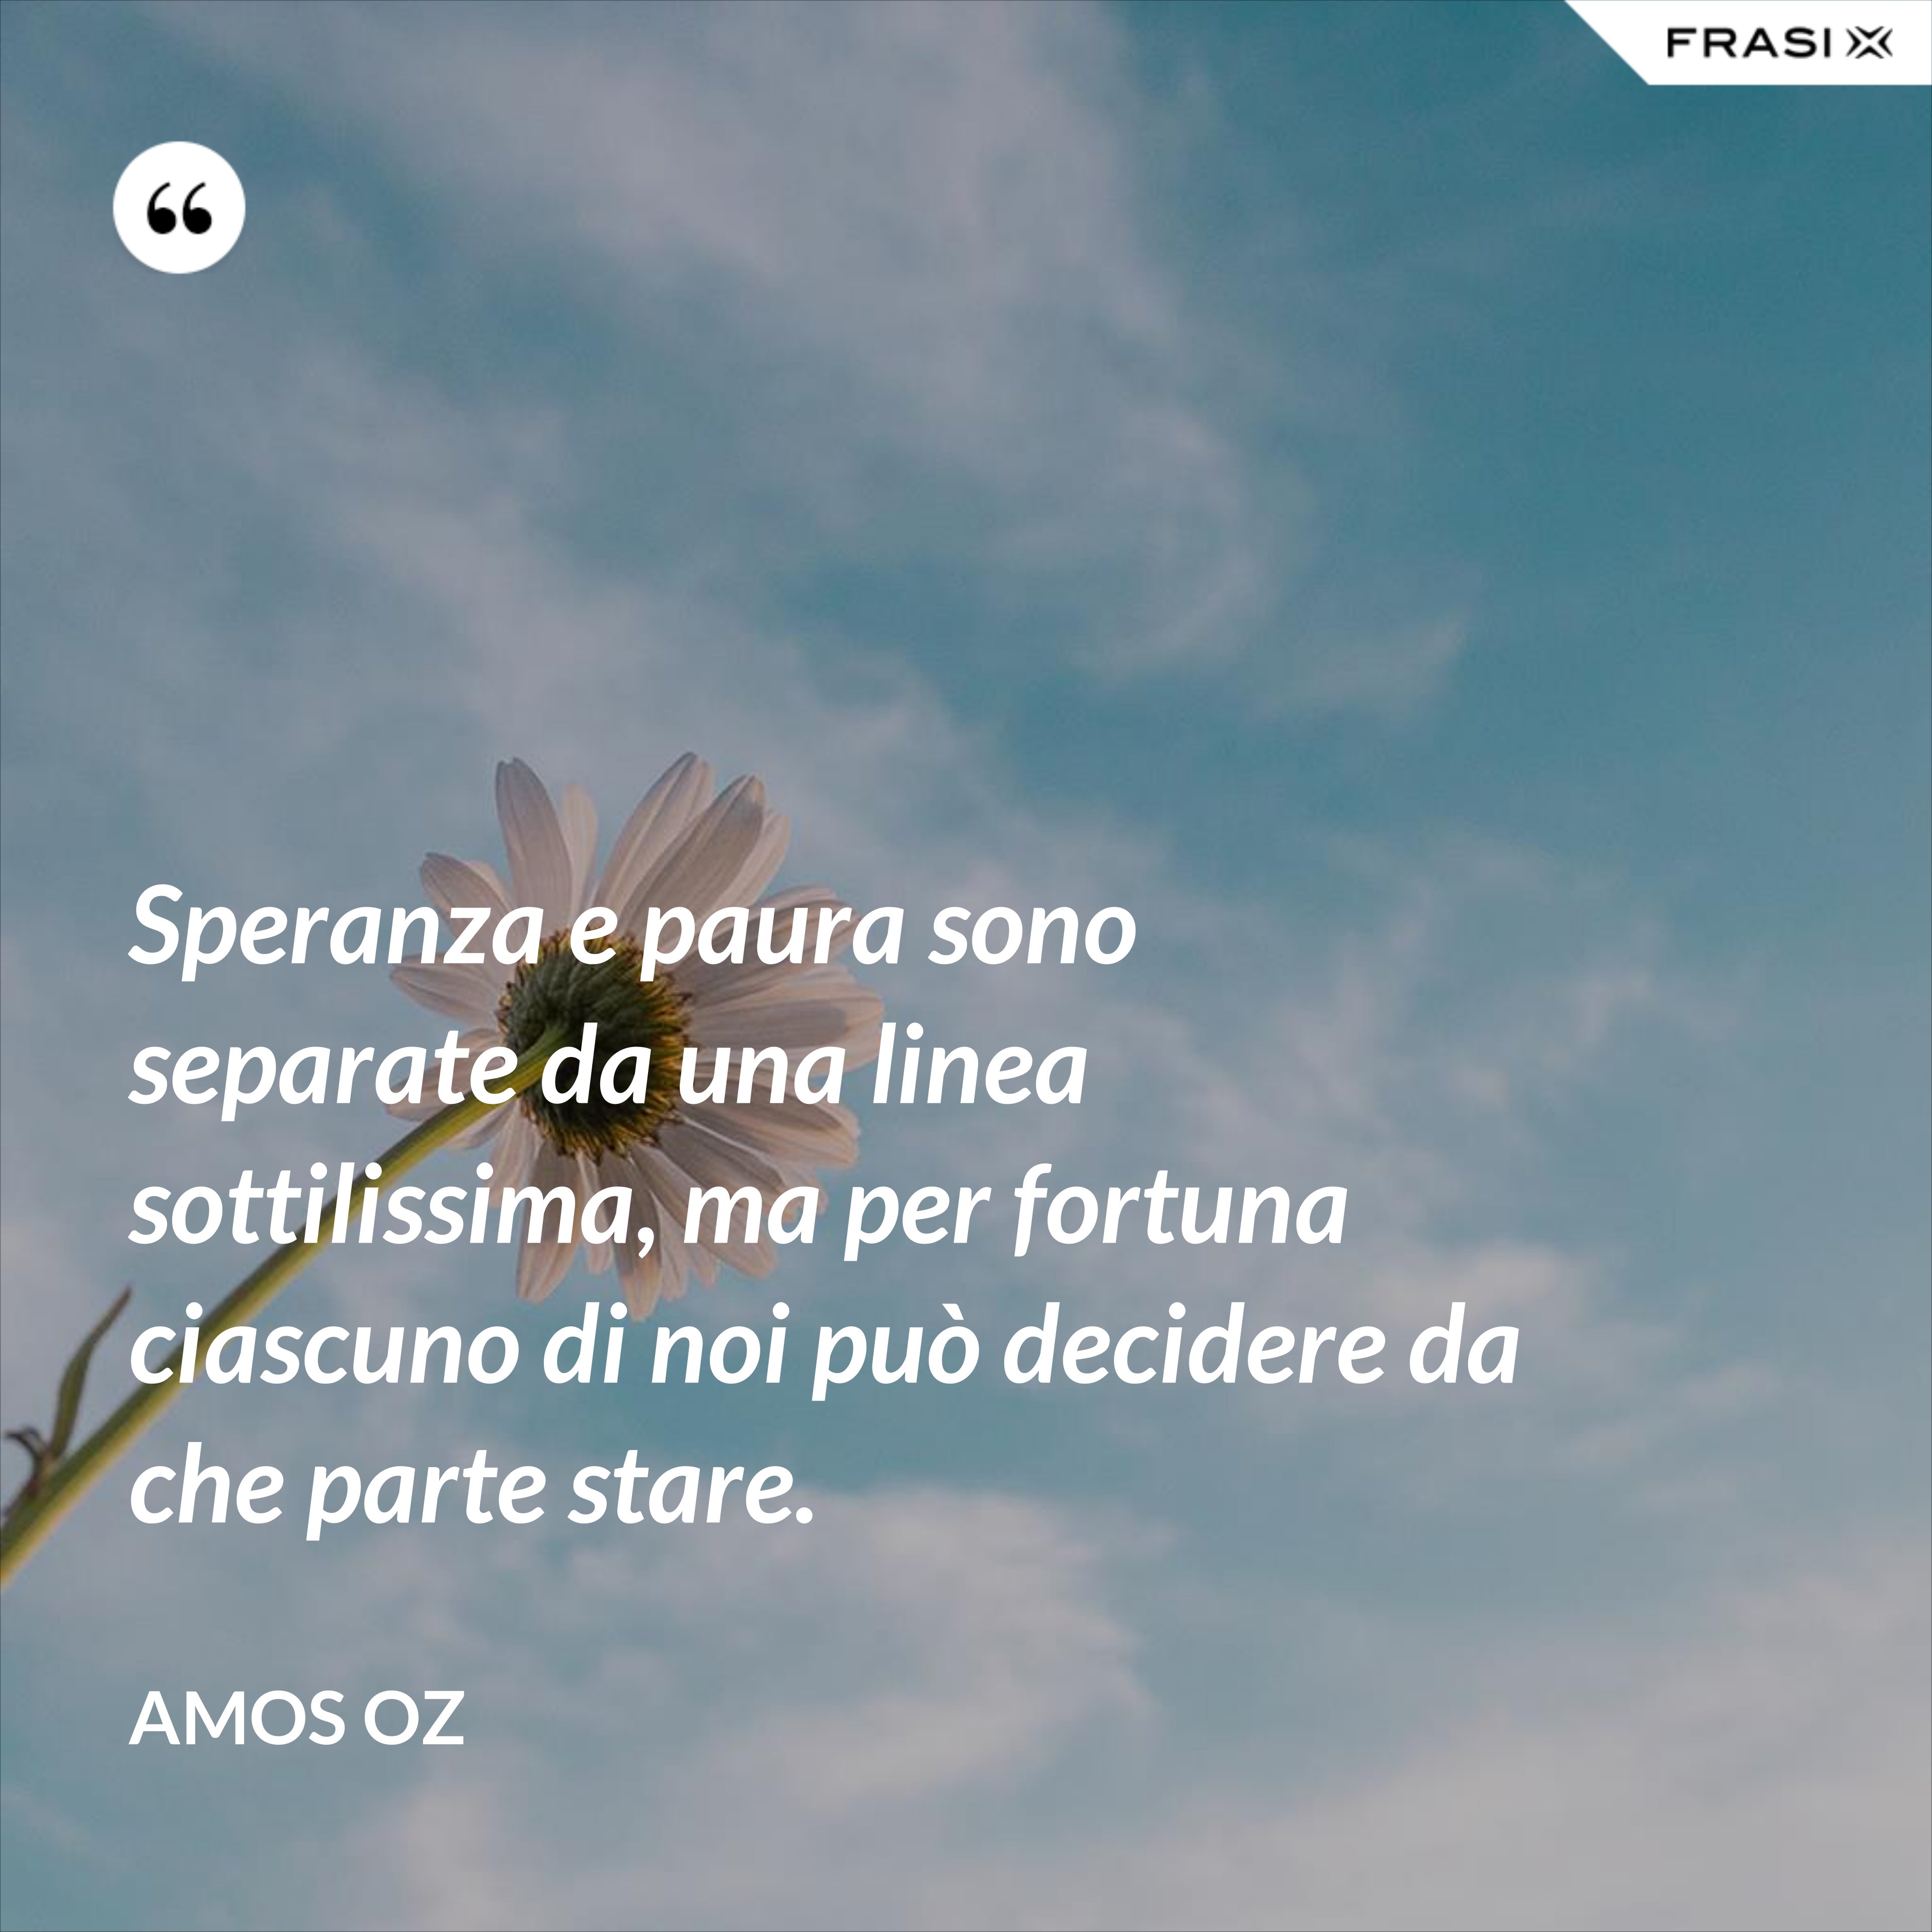 Speranza e paura sono separate da una linea sottilissima, ma per fortuna ciascuno di noi può decidere da che parte stare. - Amos Oz